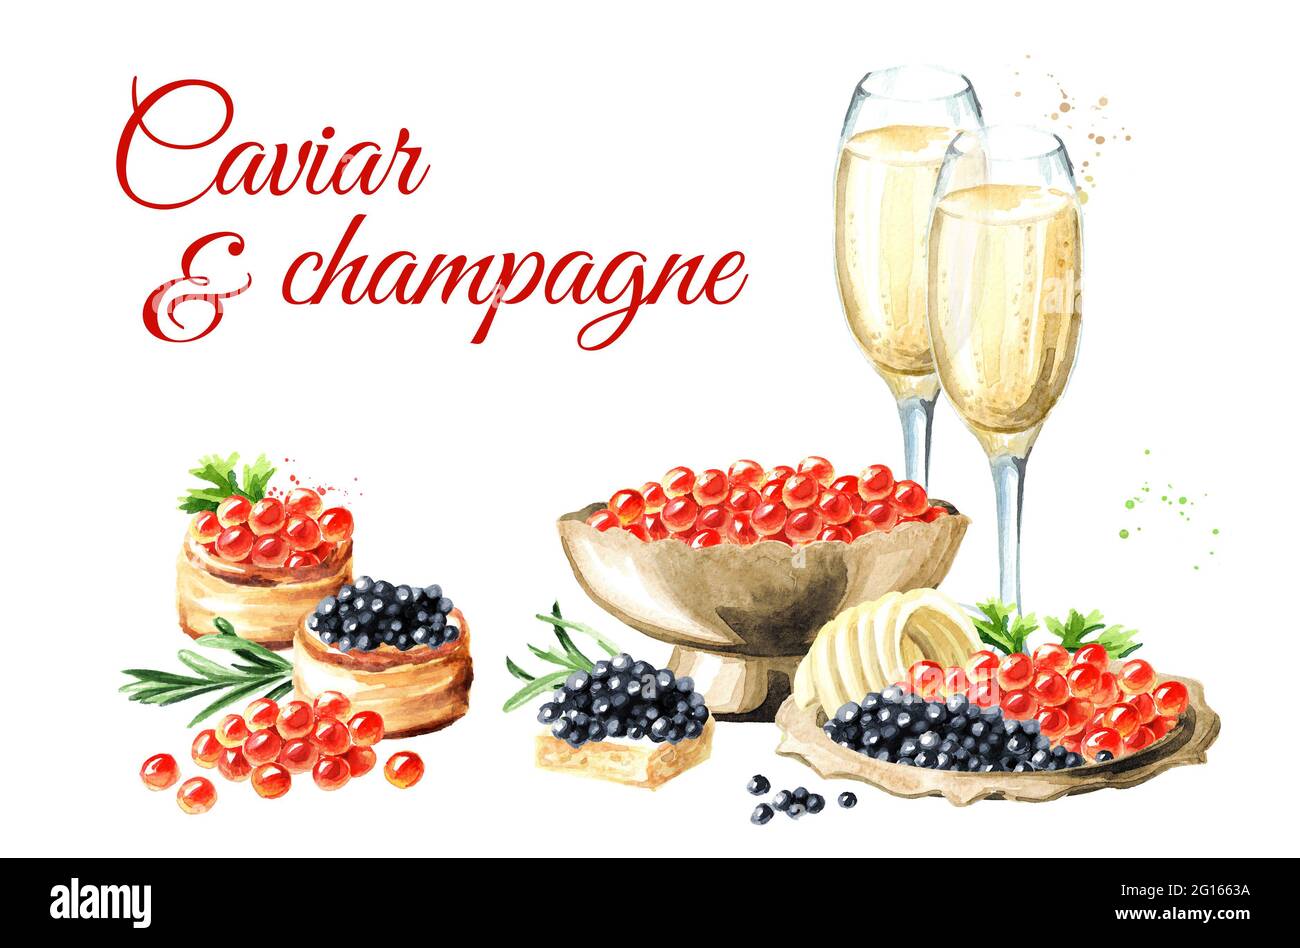 Carte caviar et champagne. Illustration aquarelle dessinée à la main, isolée sur fond blanc Banque D'Images